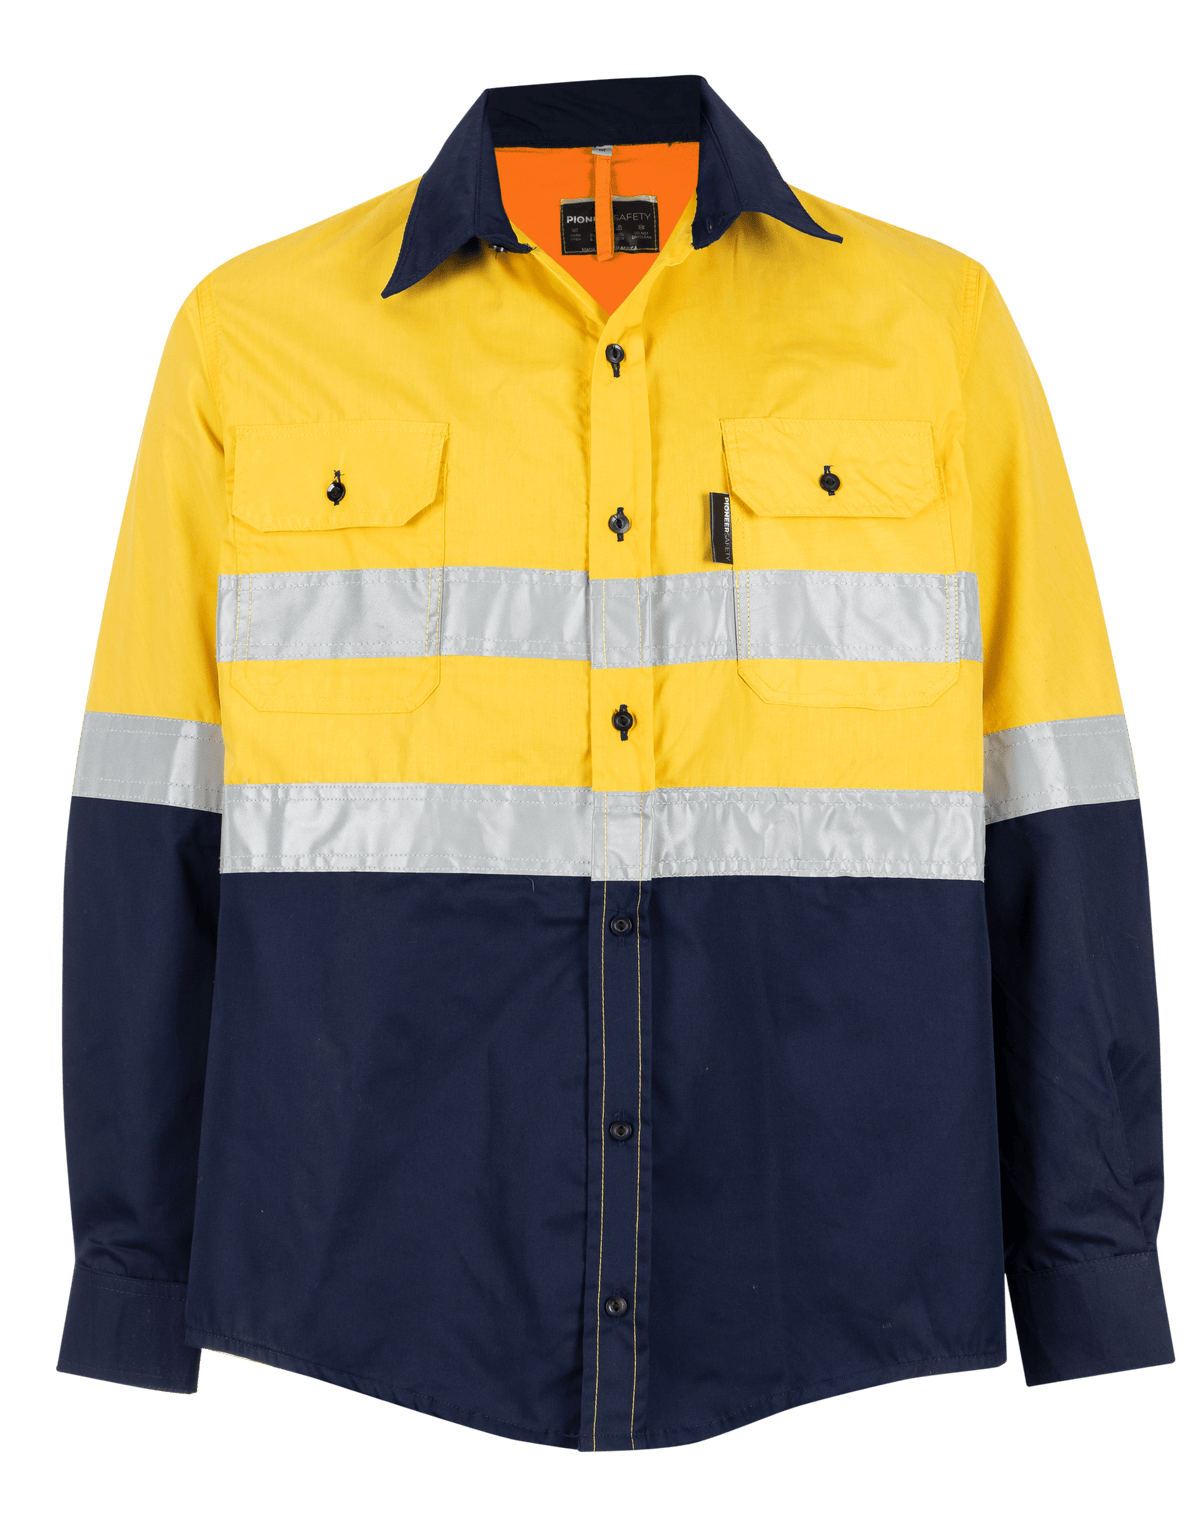 Reflective Shirt - Polycotton Yellow